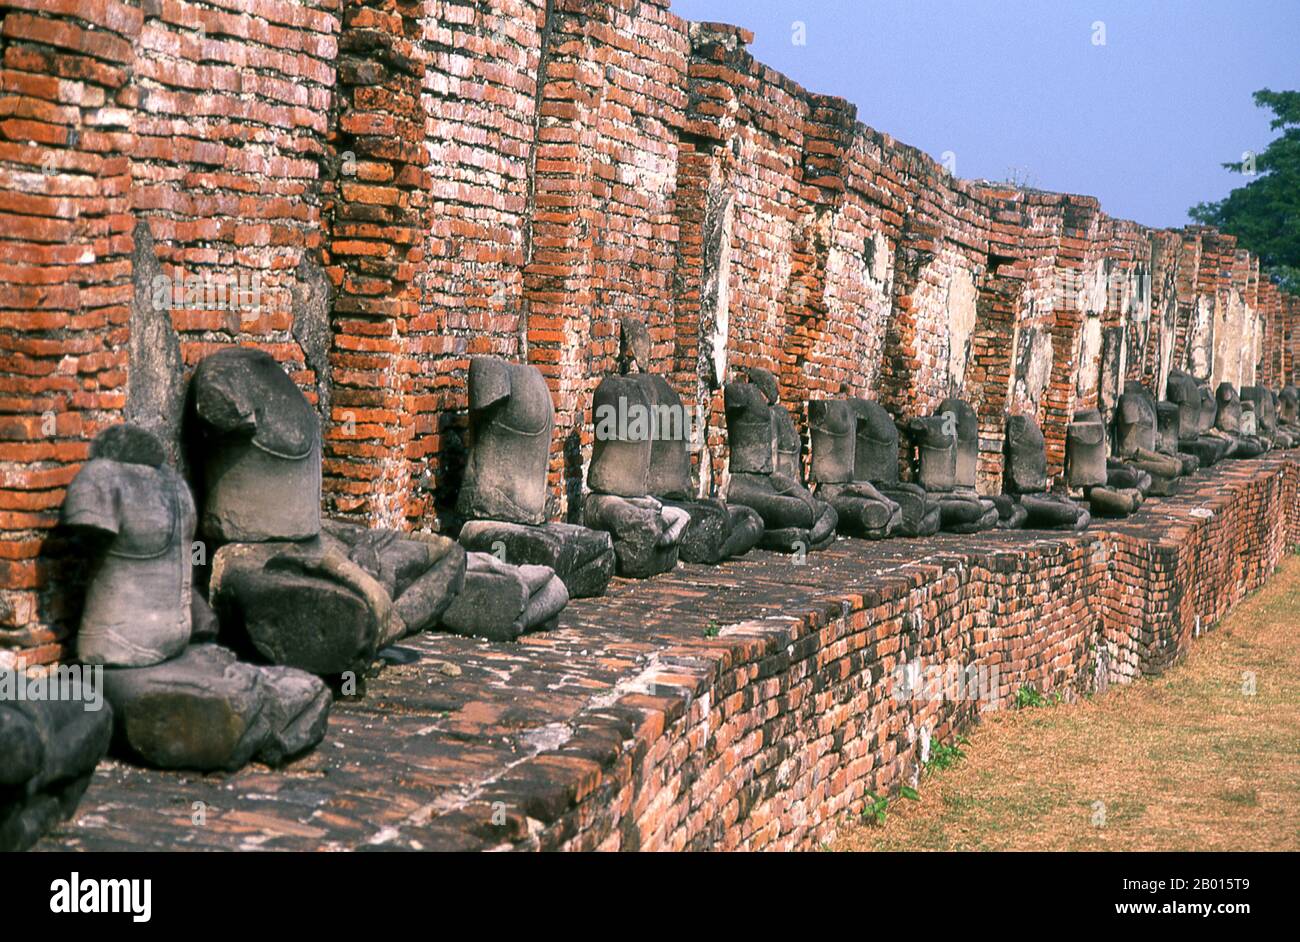 Thailandia: Buddha senza testa, Wat Phra Mahathat, Ayutthaya Historical Park. Wat Phra Mahathat fu costruito durante il regno di Borommaracha i (Boromma Rachathirat i) o Khun Luang Pa Ngua (1370-1388), che era il terzo re del regno di Ayutthaya. Ayutthaya (Ayudhya) era un regno siamese che esisteva dal 1351 al 1767. Ayutthaya era amichevole verso i commercianti stranieri, compreso il cinese, vietnamita (Annamese), indiani, giapponesi e persiani, E poi i portoghesi, spagnoli, olandesi e francesi, permettendo loro di creare villaggi fuori dalle mura della città. Foto Stock